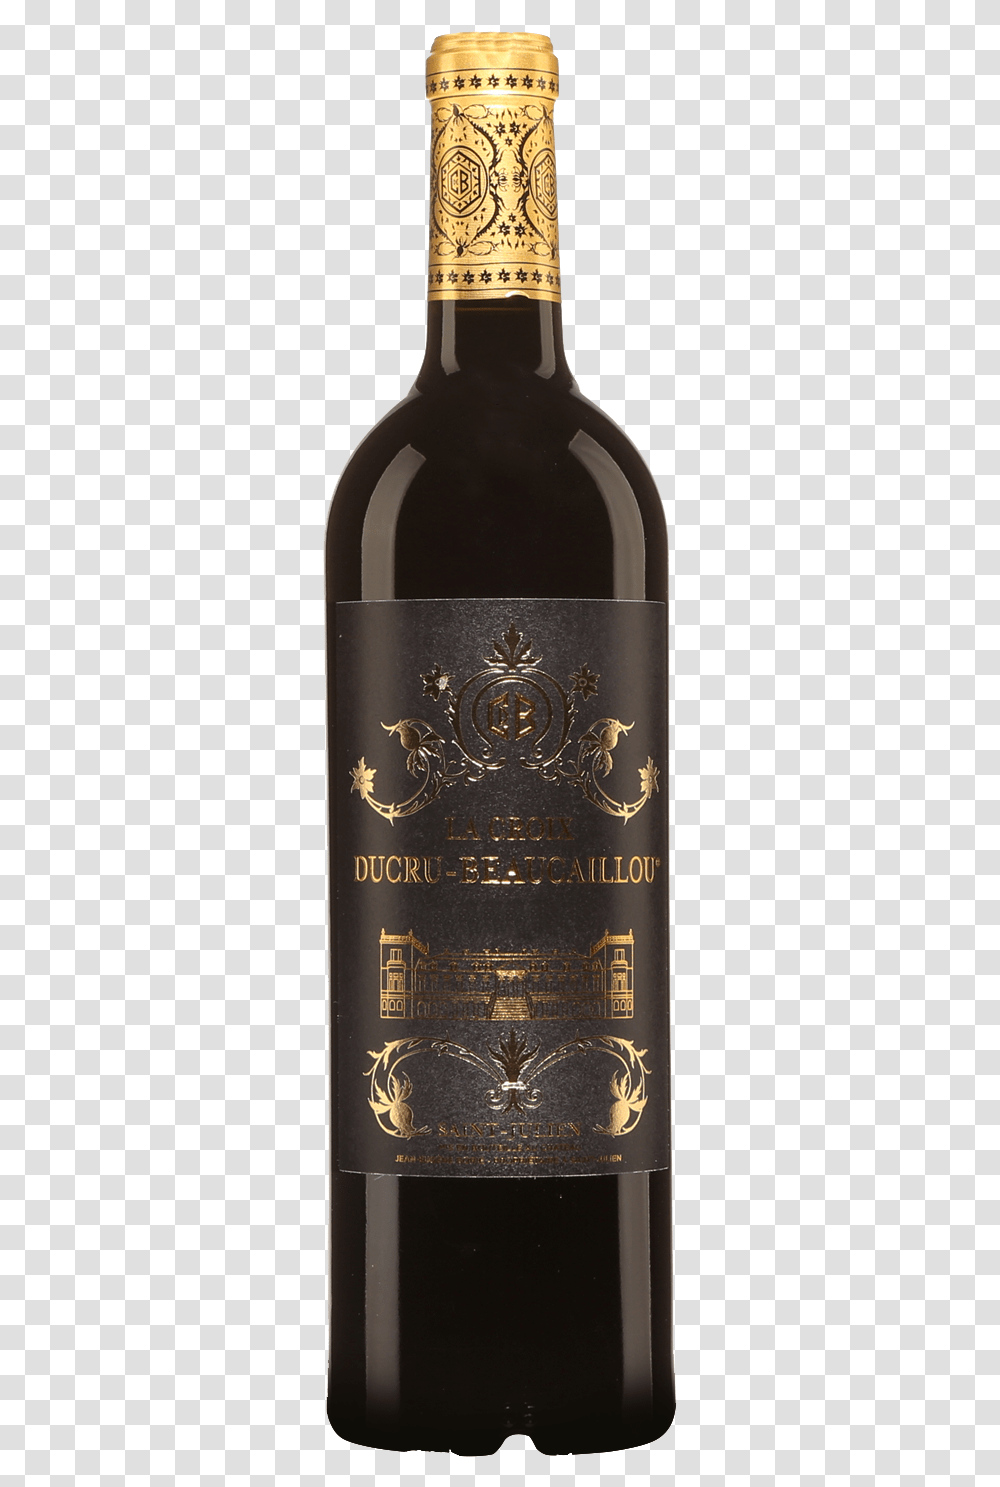 La Croix Ducru Beaucaillou Saint Julien Wine Bottle, Alcohol, Beverage, Drink, Beer Transparent Png